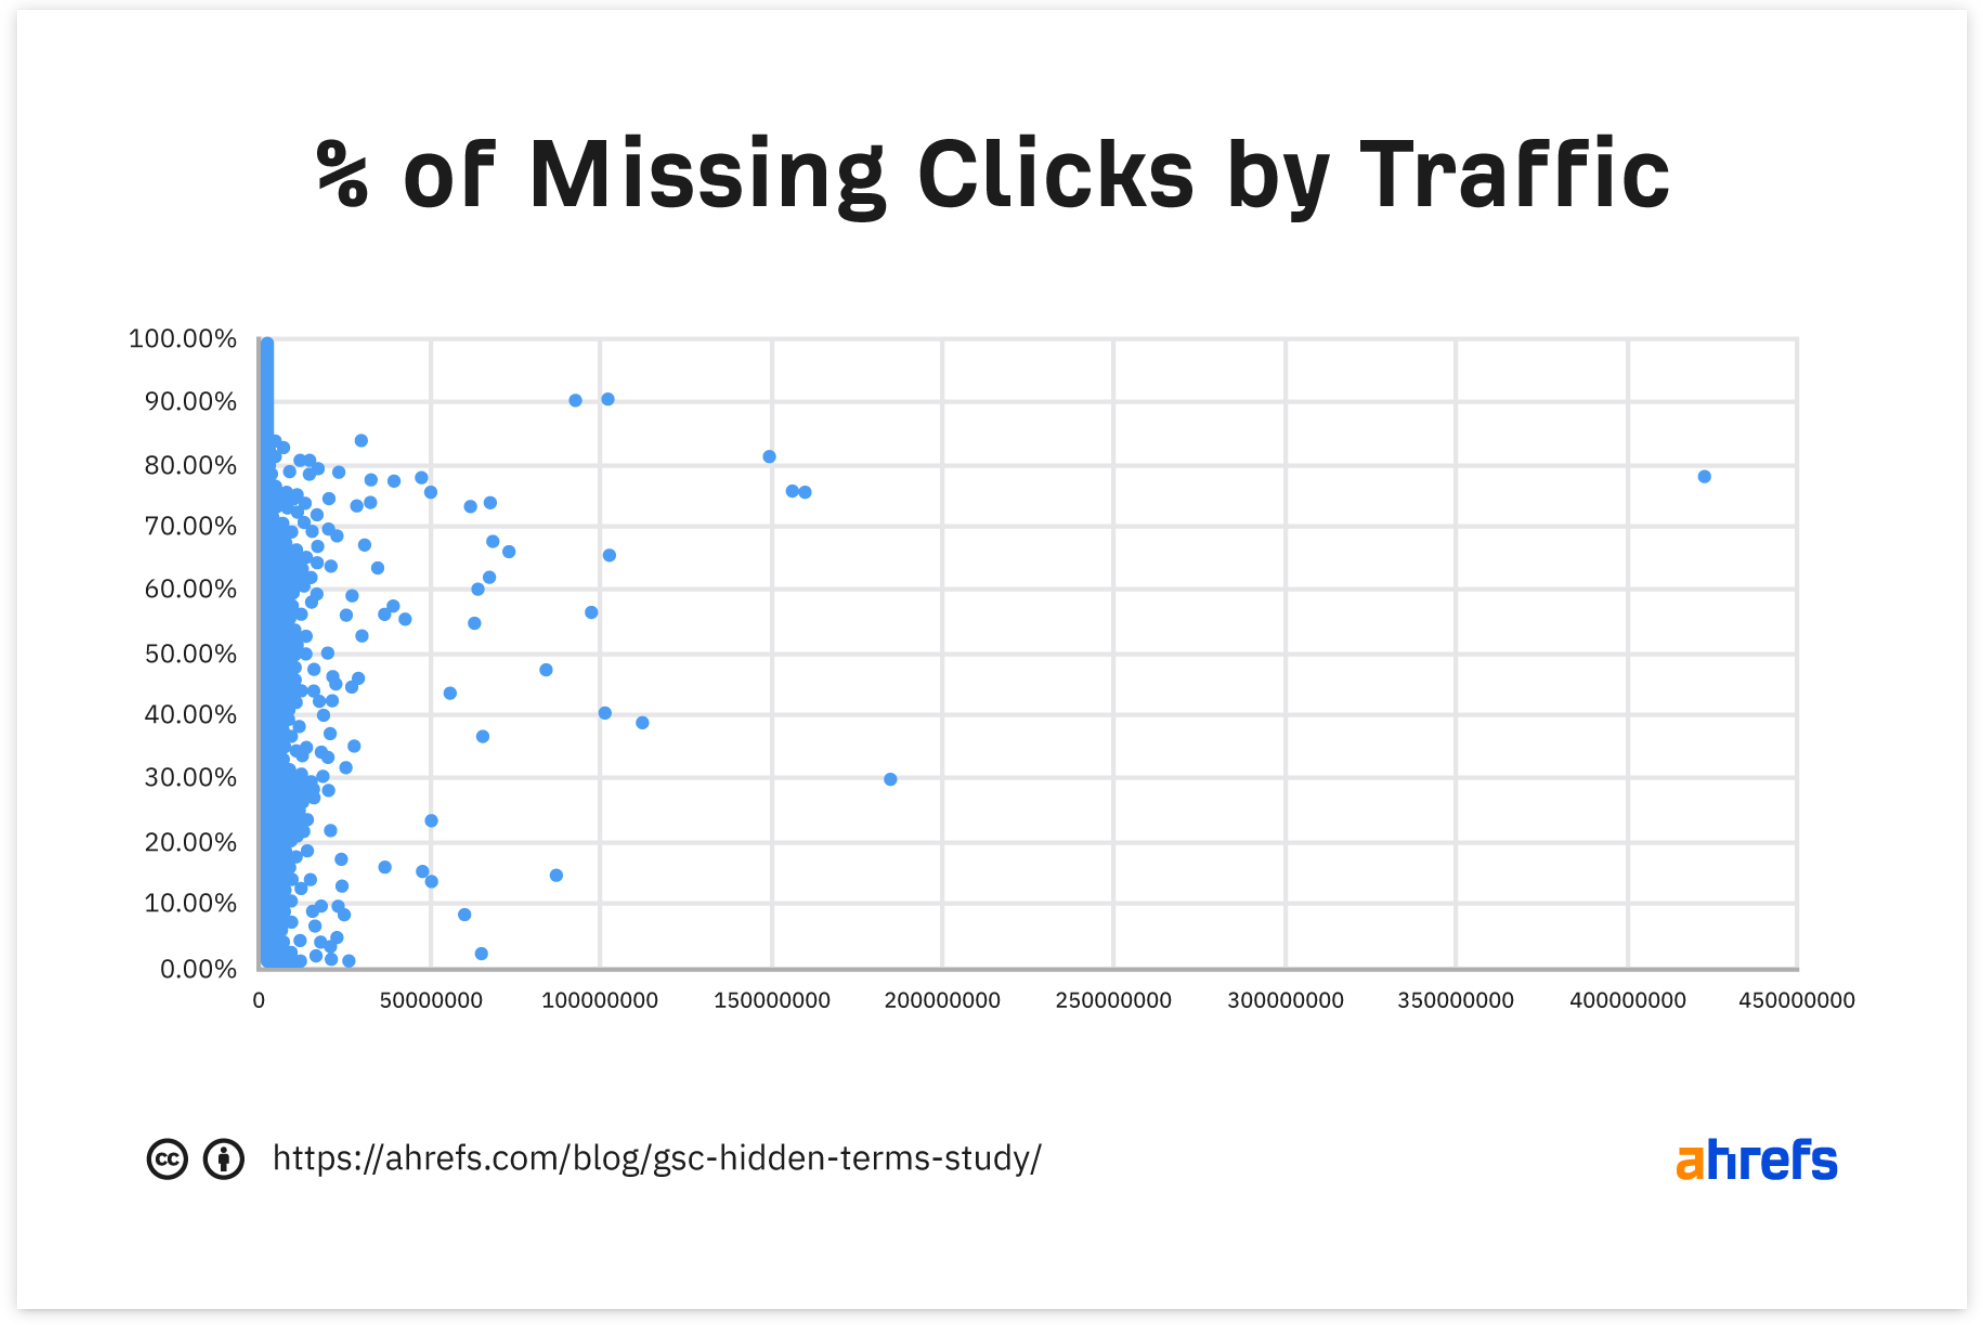 Ahrefs-Studie: Anteil fehlender Klickdaten aus der Google Search Console und Traffic in Klicks